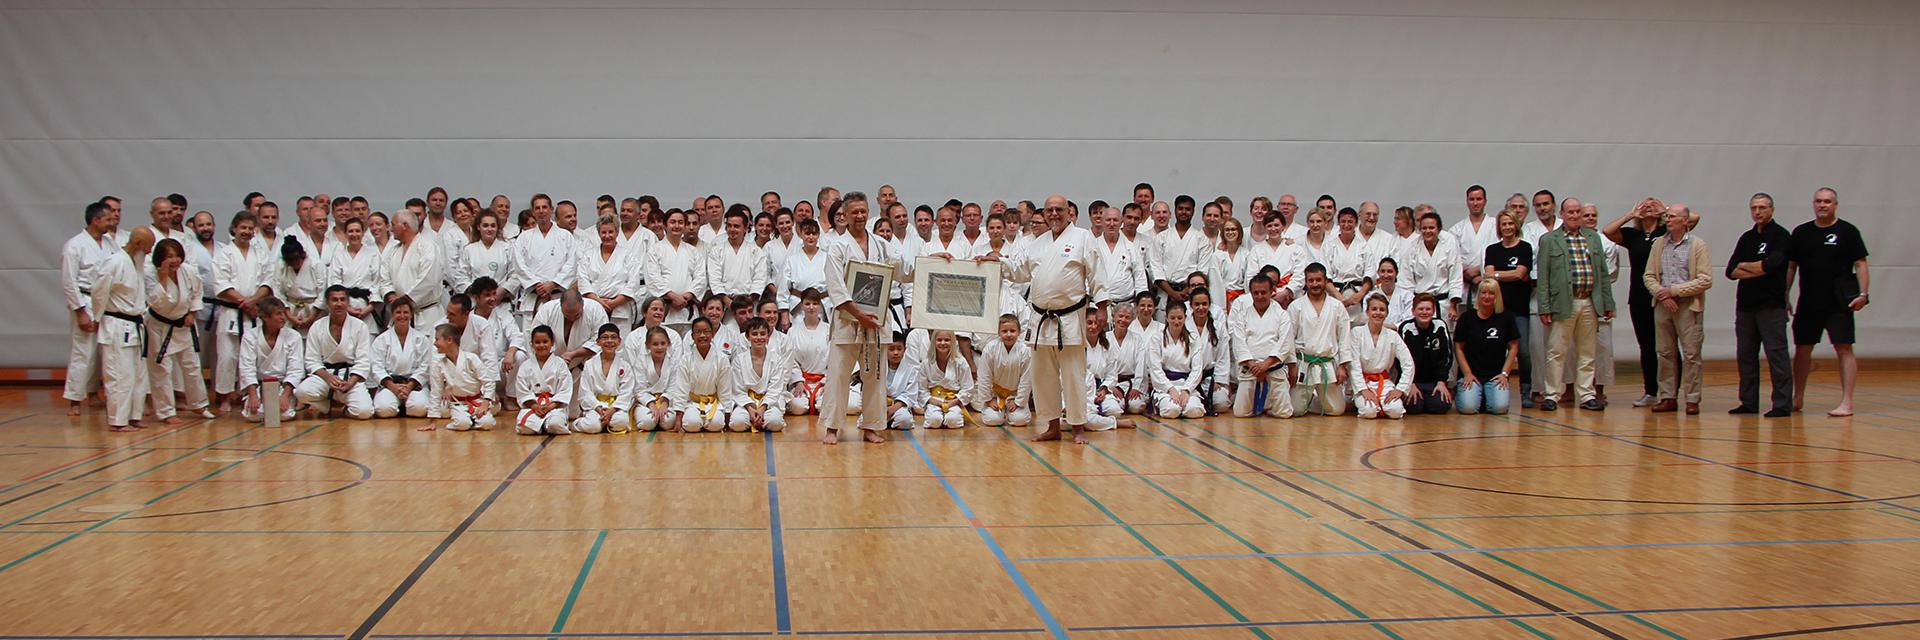 Gruppenfoto Karate Dojo Koblenz